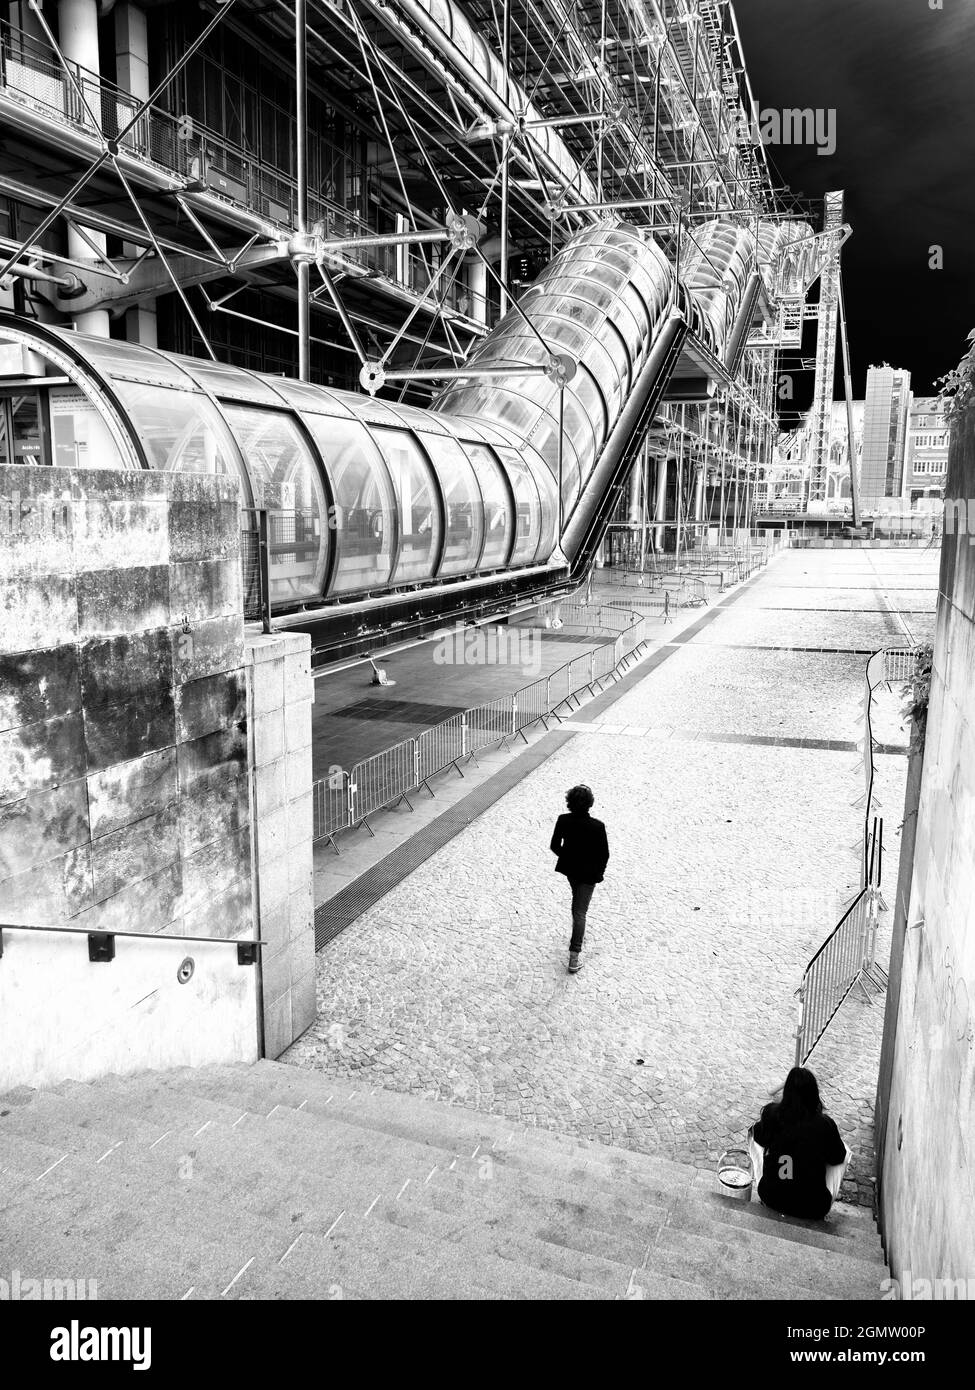 Paris, France - 20 septembre 2018 le Centre Pompidou est un centre culturel, artistique et de divertissement radical dans le quartier Beaubourg du 4ème Arrondis Banque D'Images